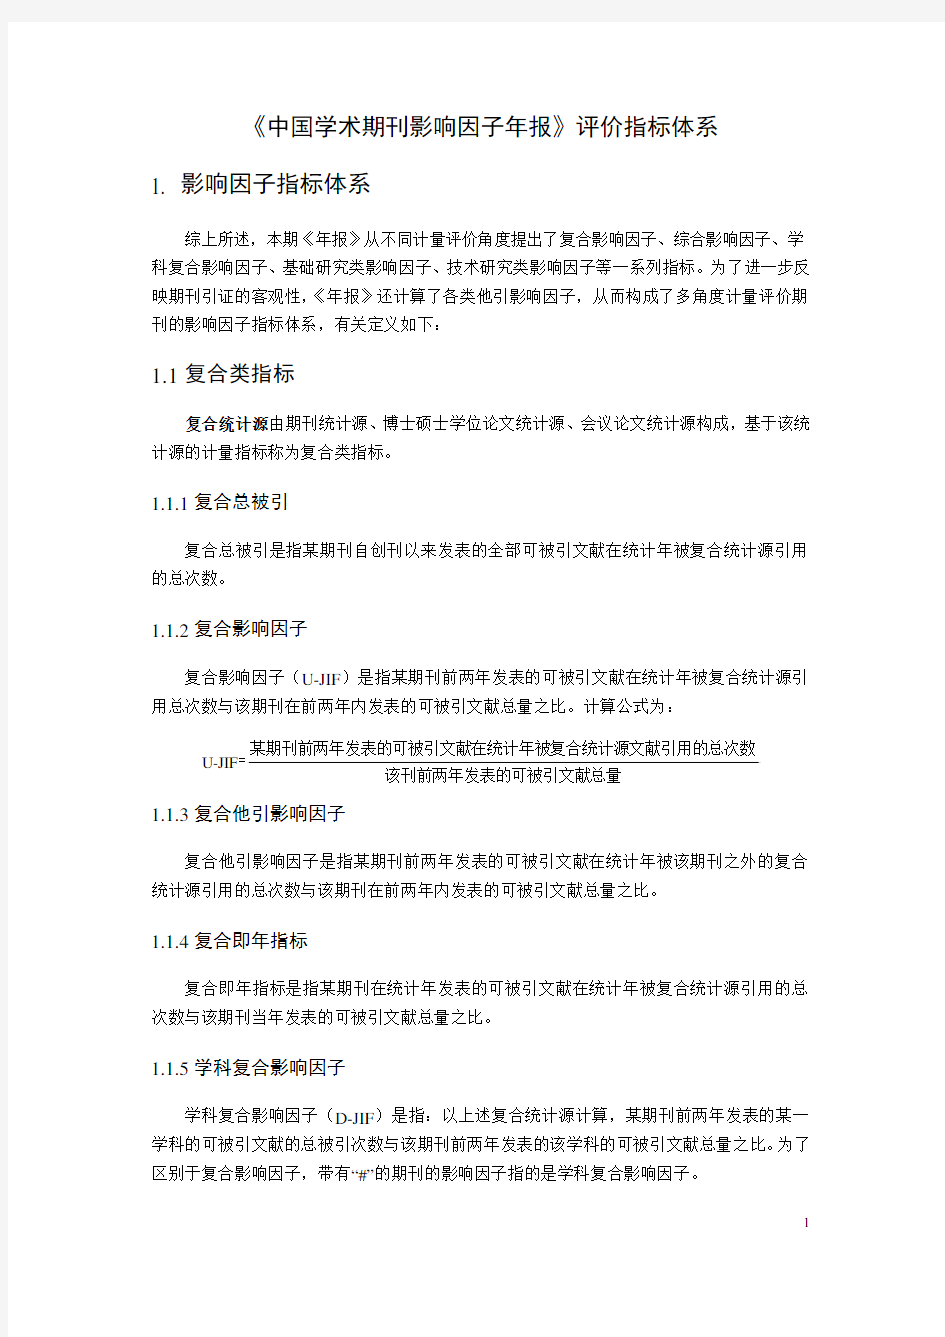 中国学术期刊影响因子年报指标体系